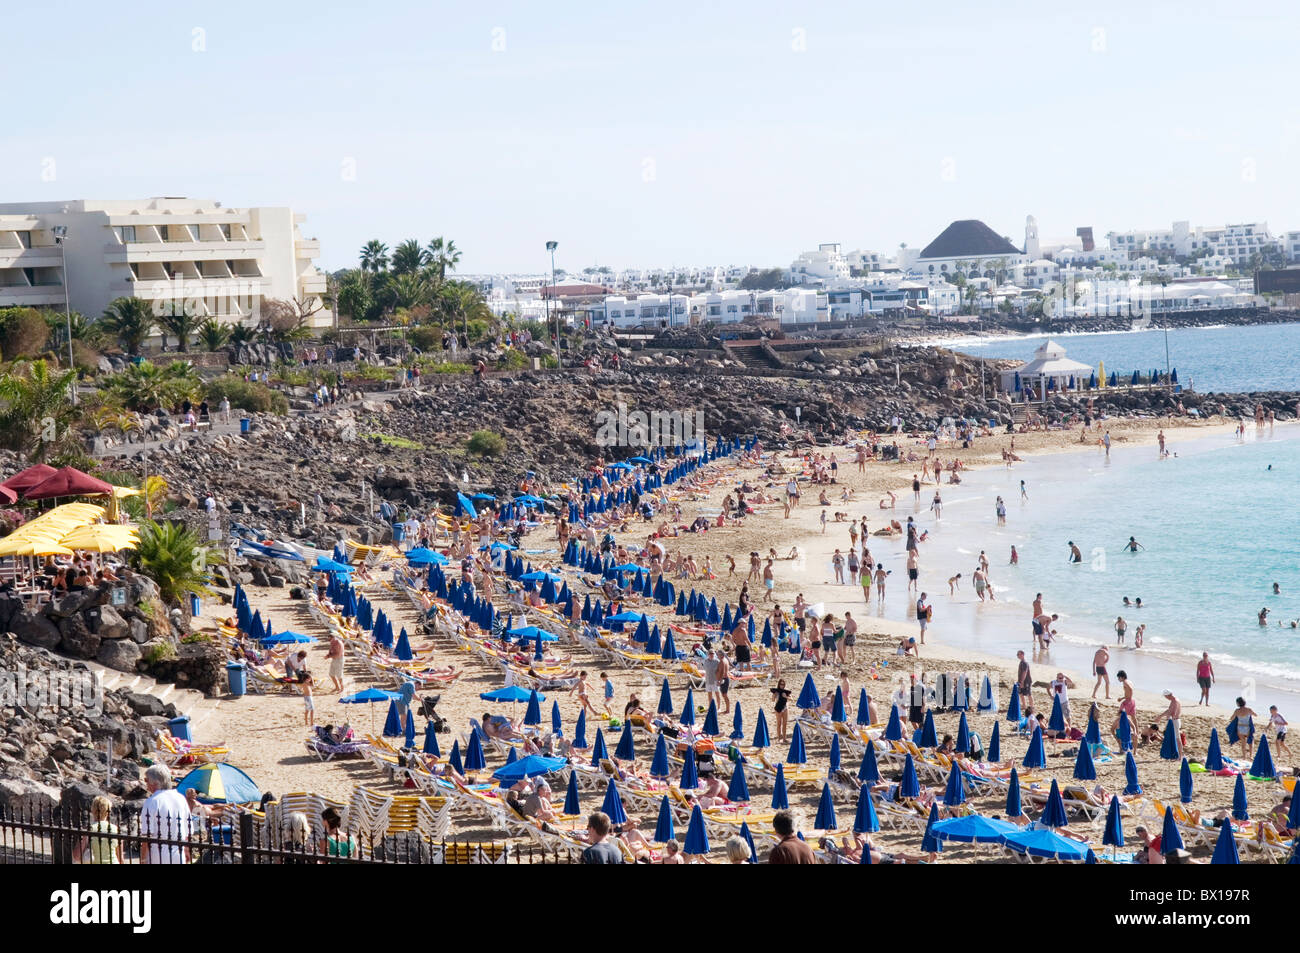 Affollate spiagge Spiaggia lanzarote isole canarie le isole Canarie destinazione di vacanza sole caldo sunny playa blanca vacanzieri inglesi Foto Stock